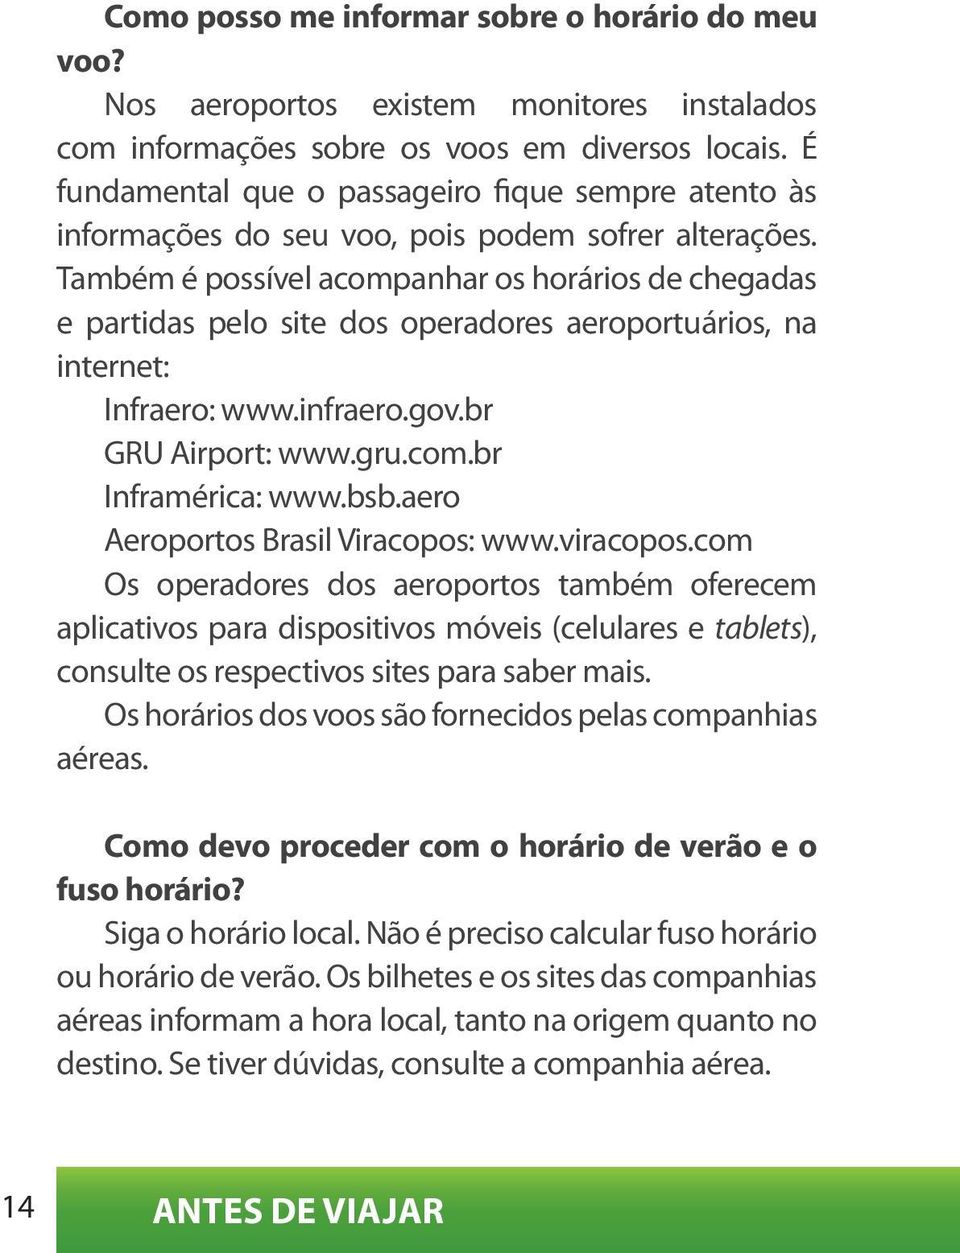 Também é possível acompanhar os horários de chegadas e partidas pelo site dos operadores aeroportuários, na internet: Infraero: www.infraero.gov.br GRU Airport: www.gru.com.br Inframérica: www.bsb.